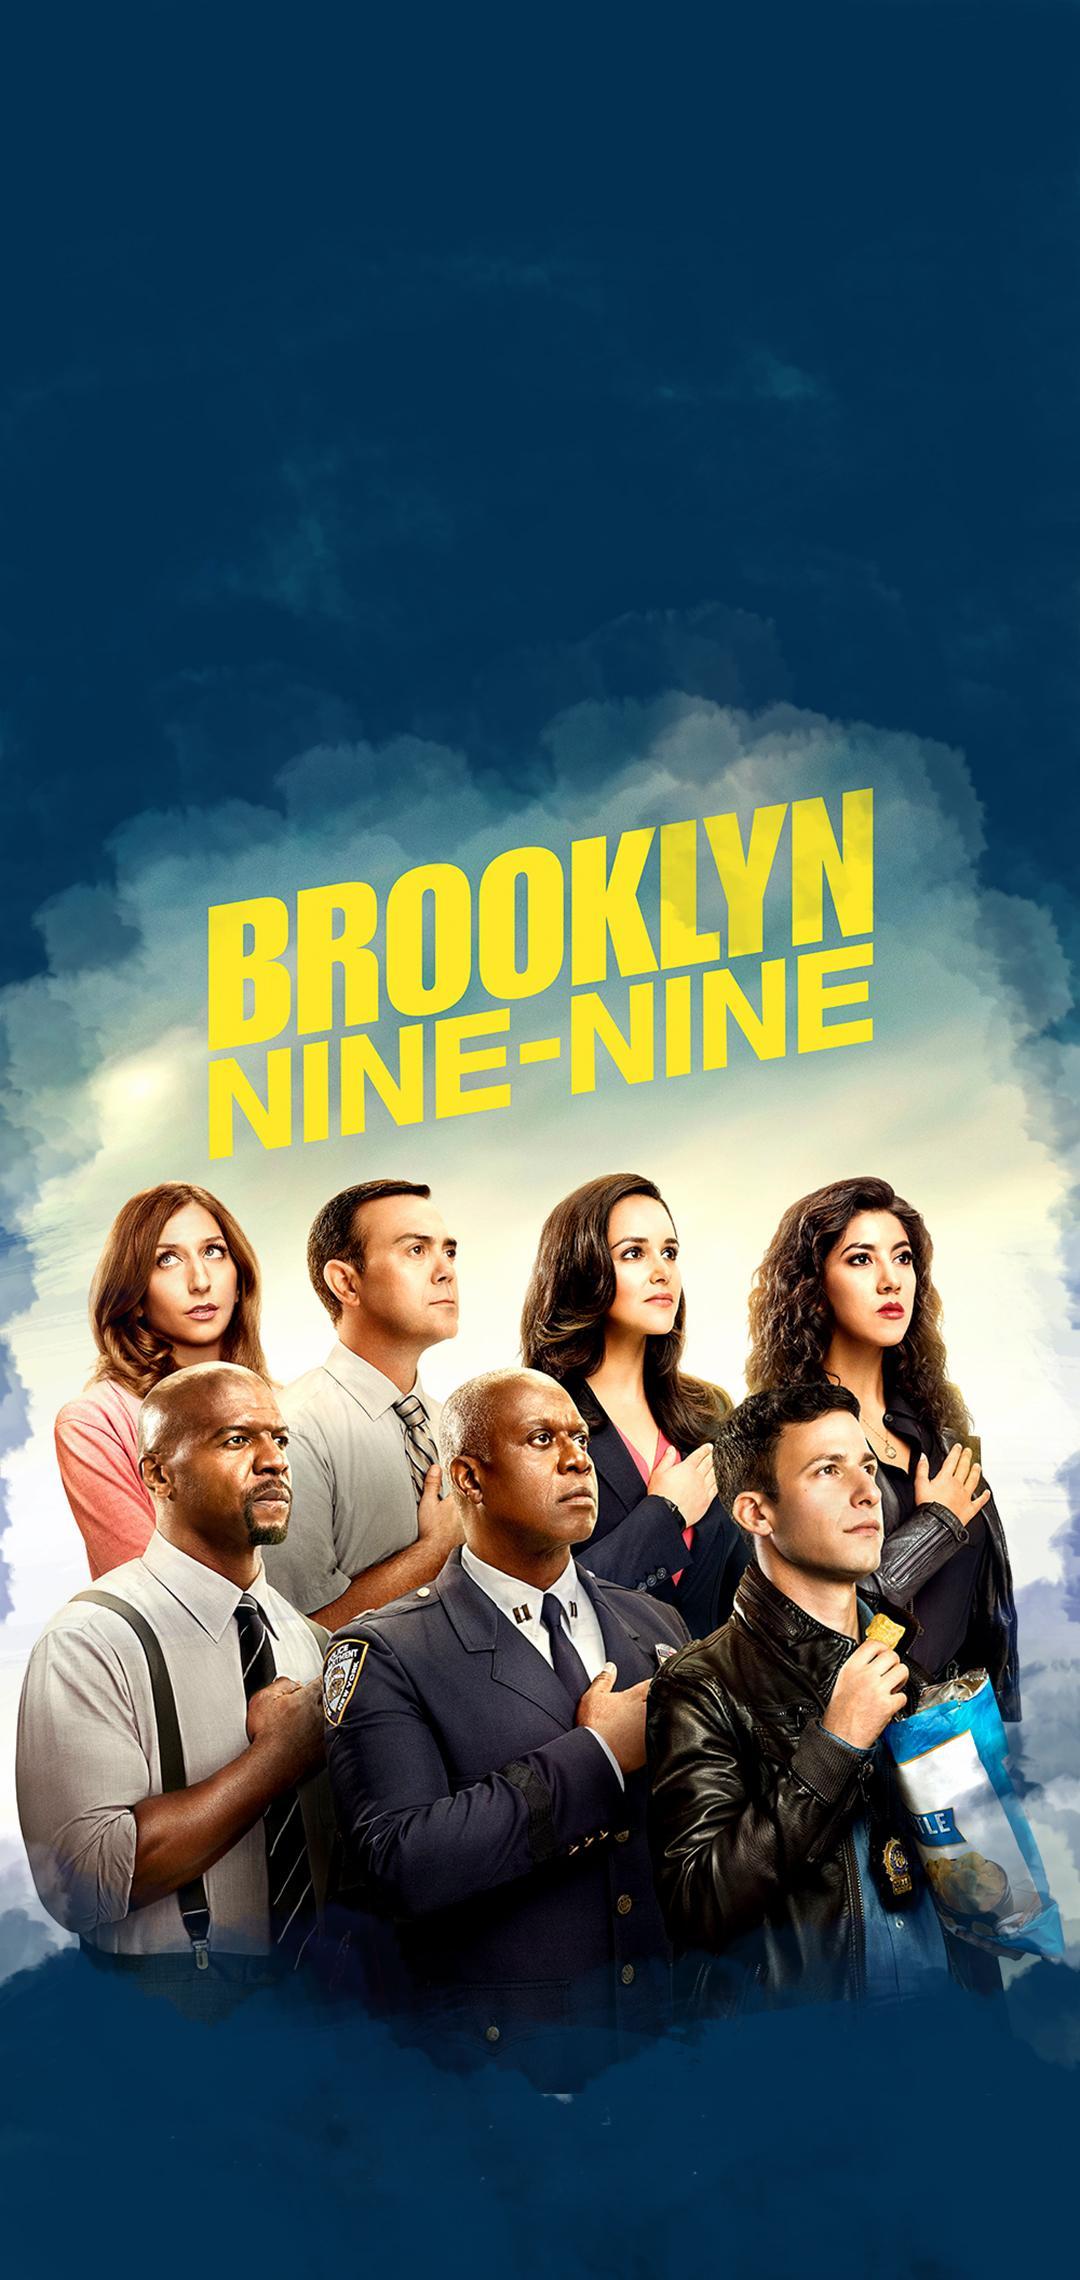 Brooklyn Nine Nine, Brooklynnineninereddit.com